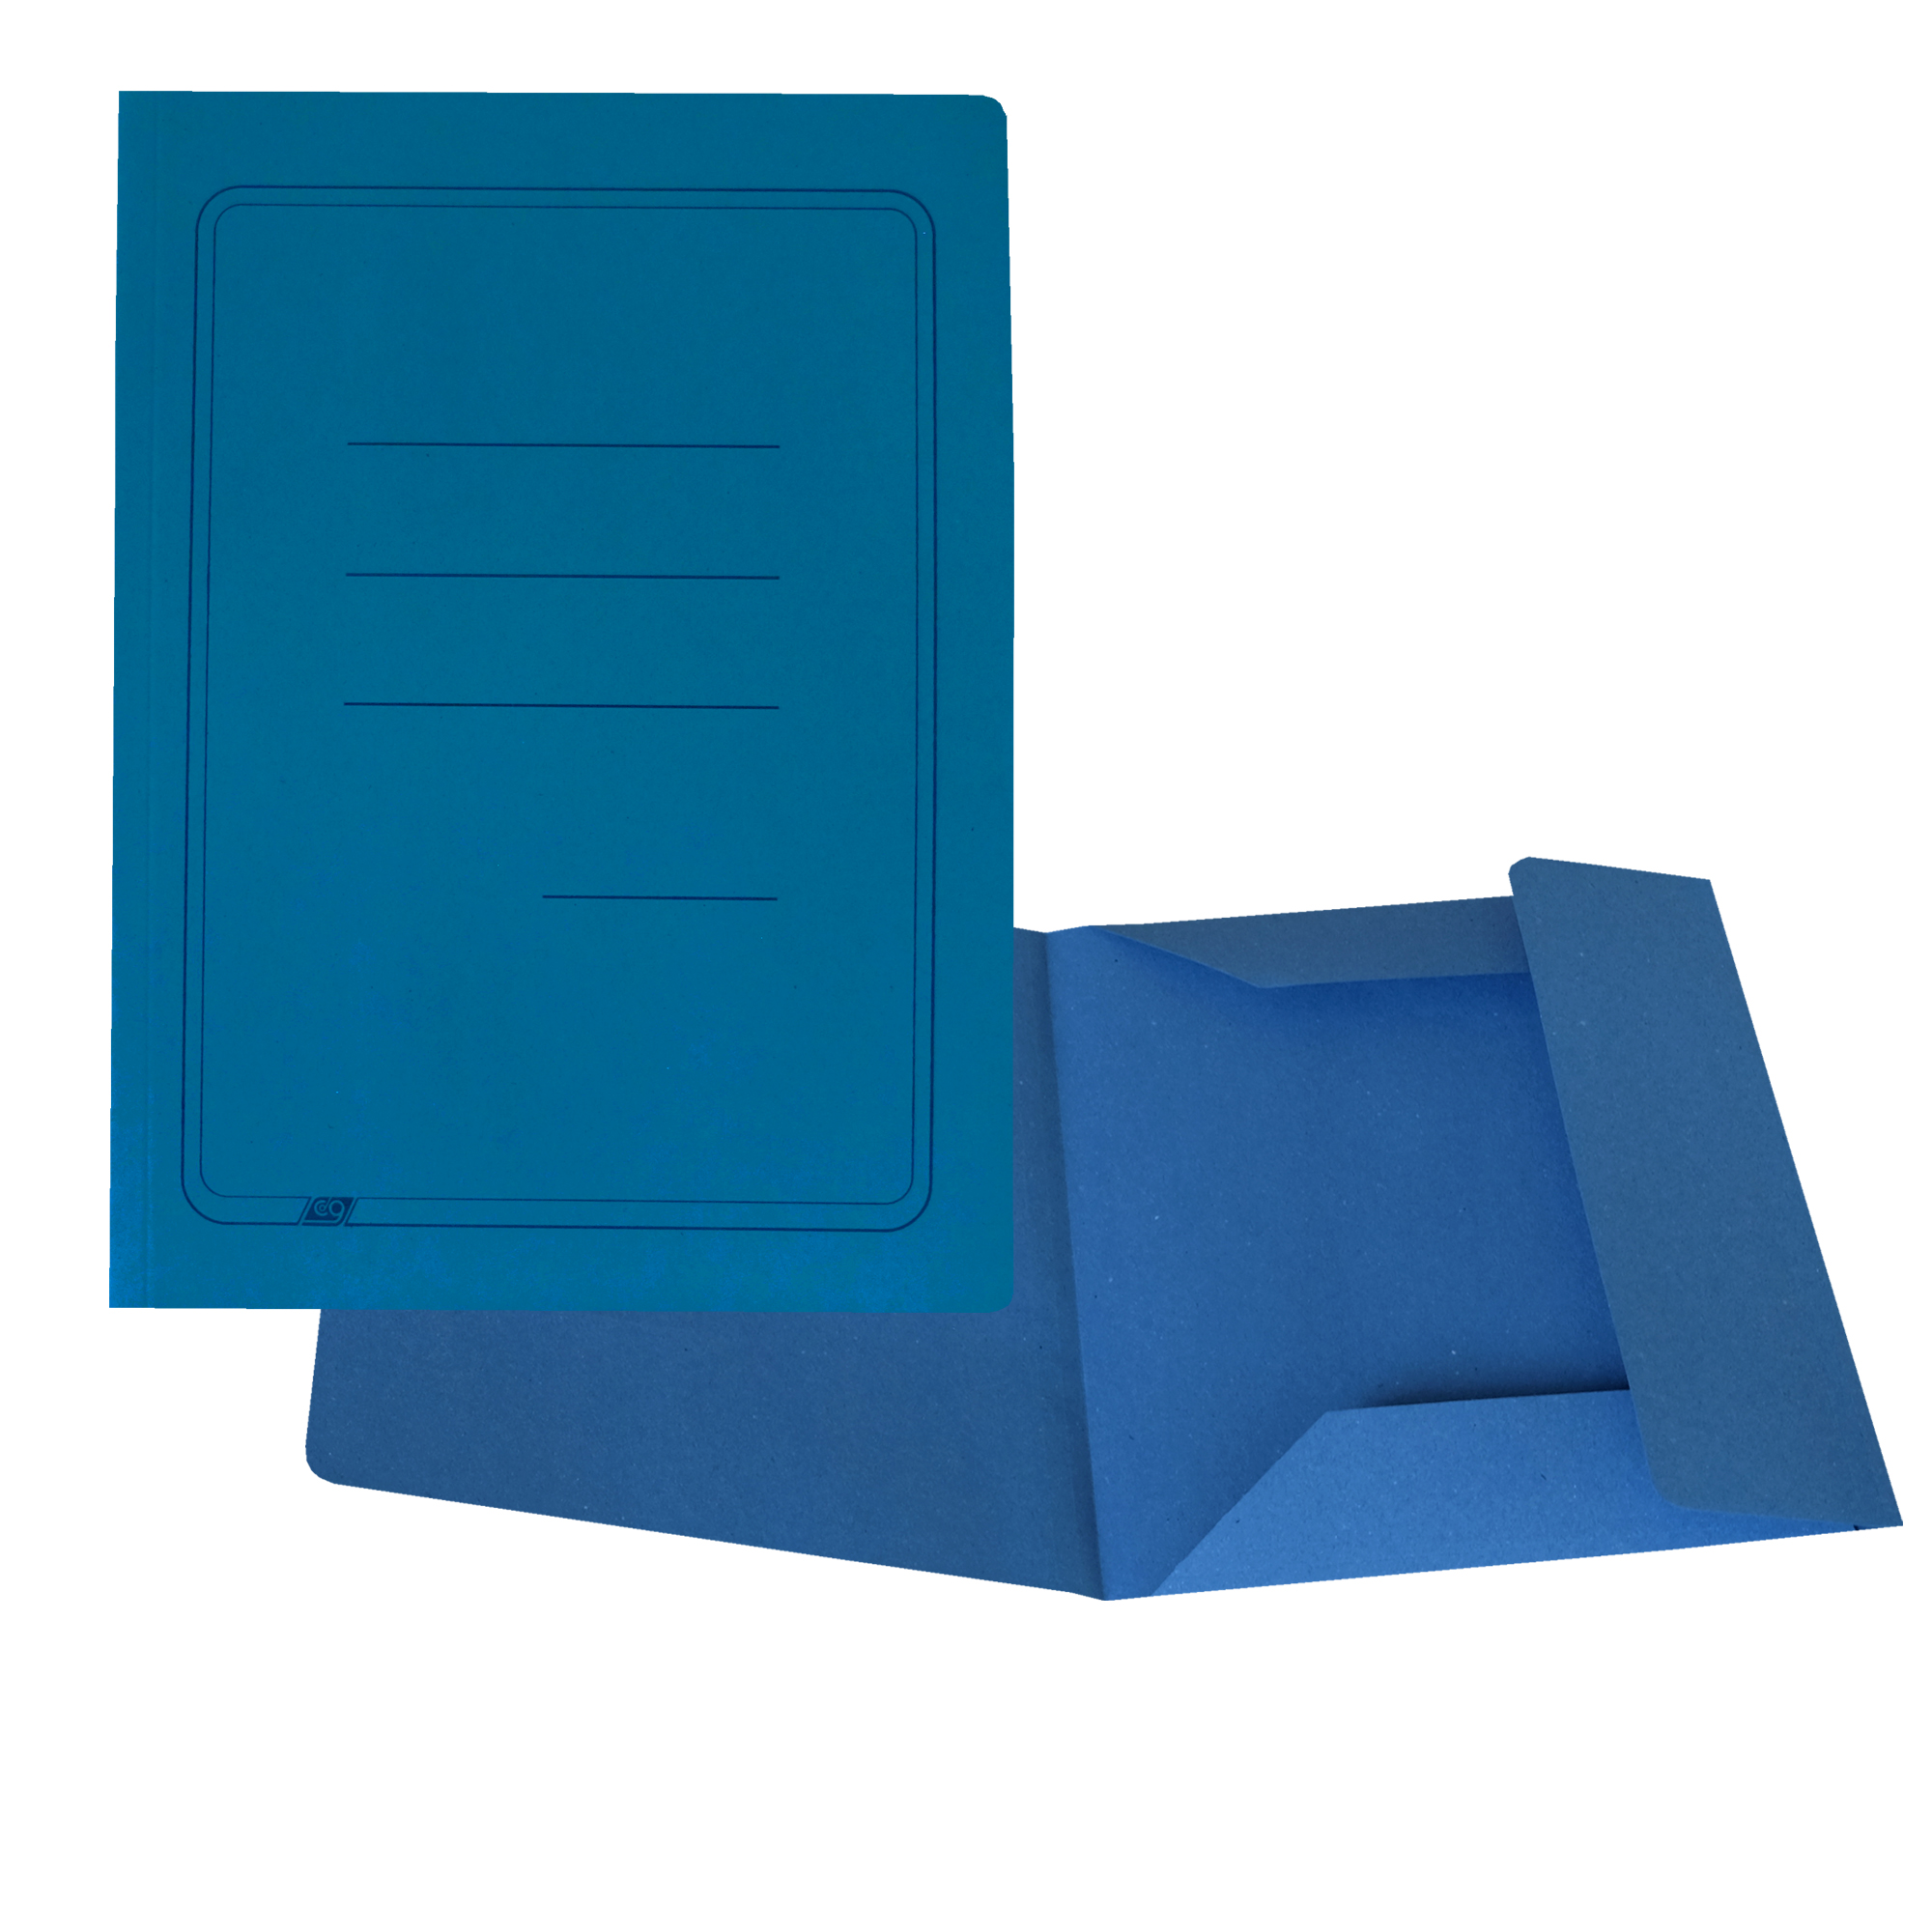 Cartelline 3 lembi - con stampa - cartoncino Manilla 200 gr - 25x33 cm -  azzurro - Cartotecnica del Garda - conf. 50 pezzi